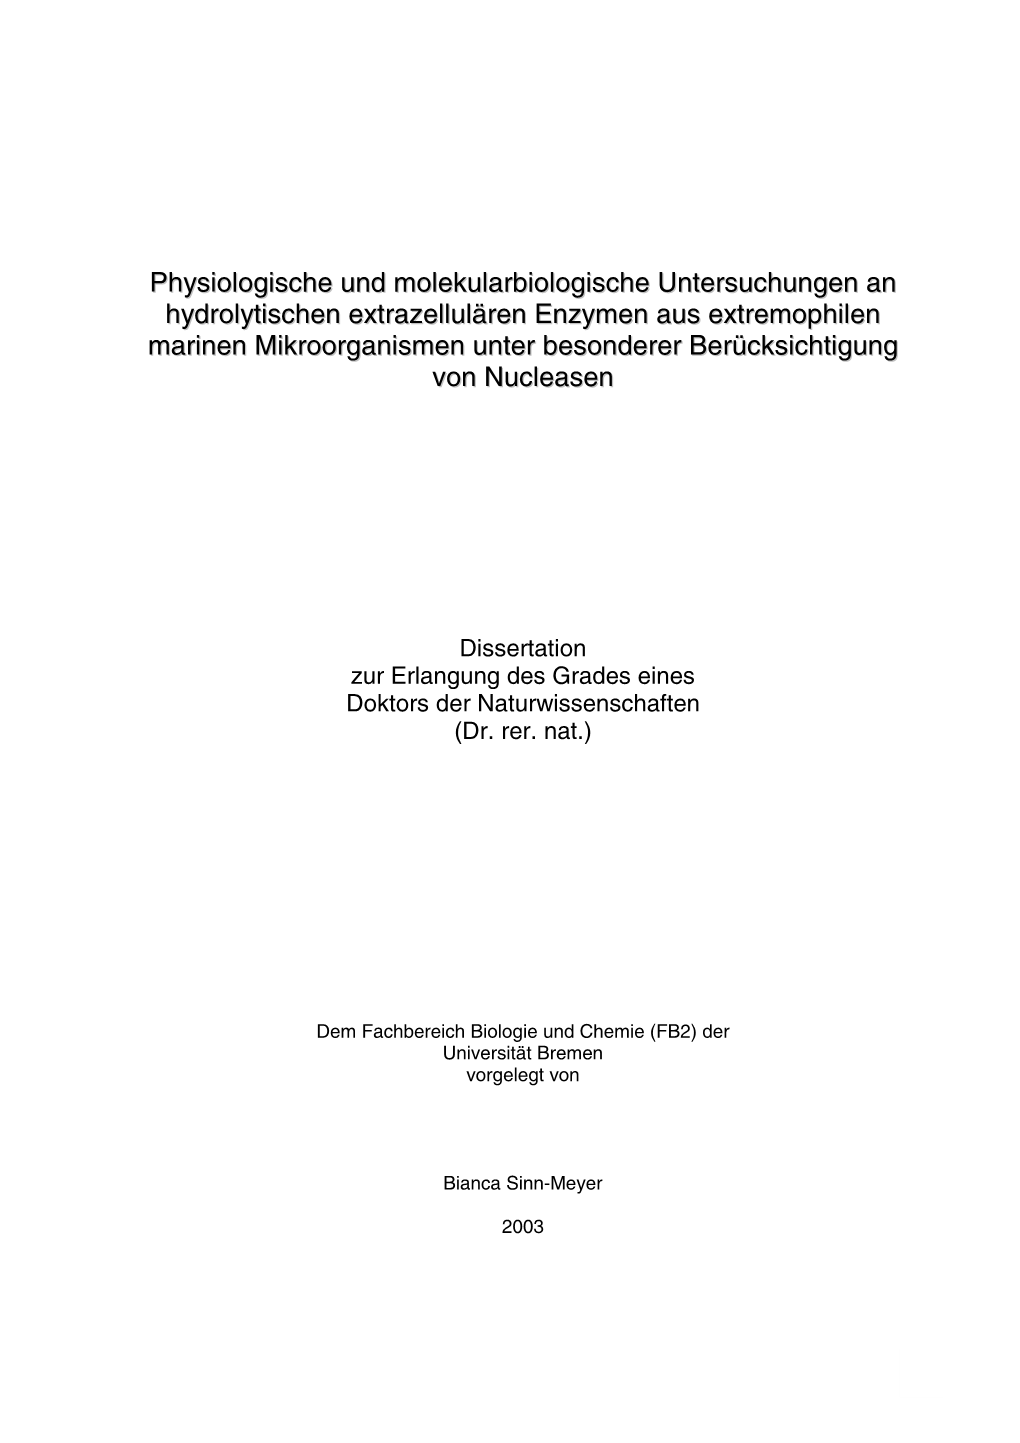 Dissertation, Bianca Sinn-Meyer, Fachbereich Biologie Und Chemie